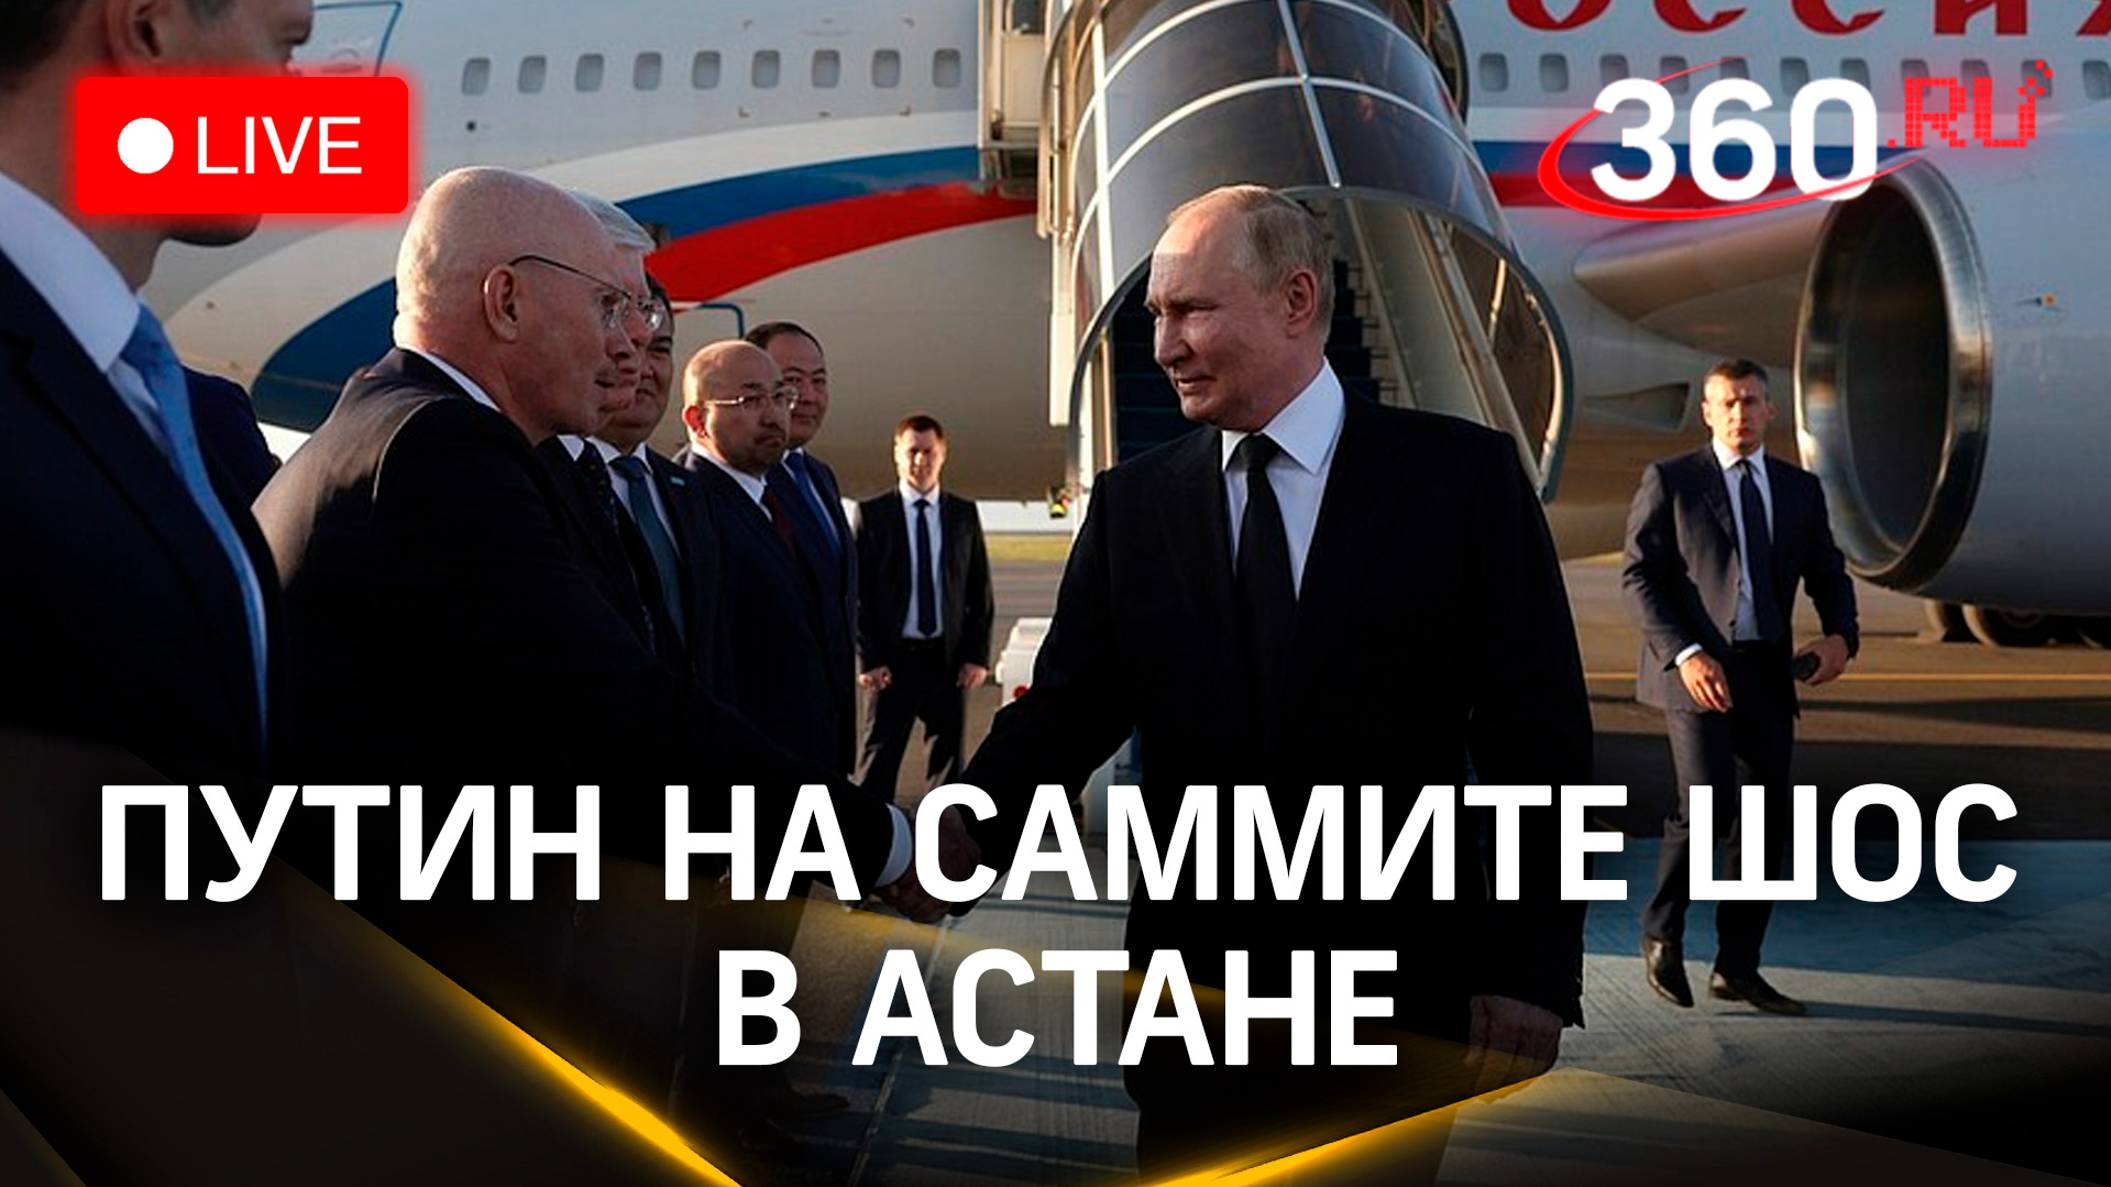 Путин проводит двусторонние встречи на полях саммита ШОС в Астане